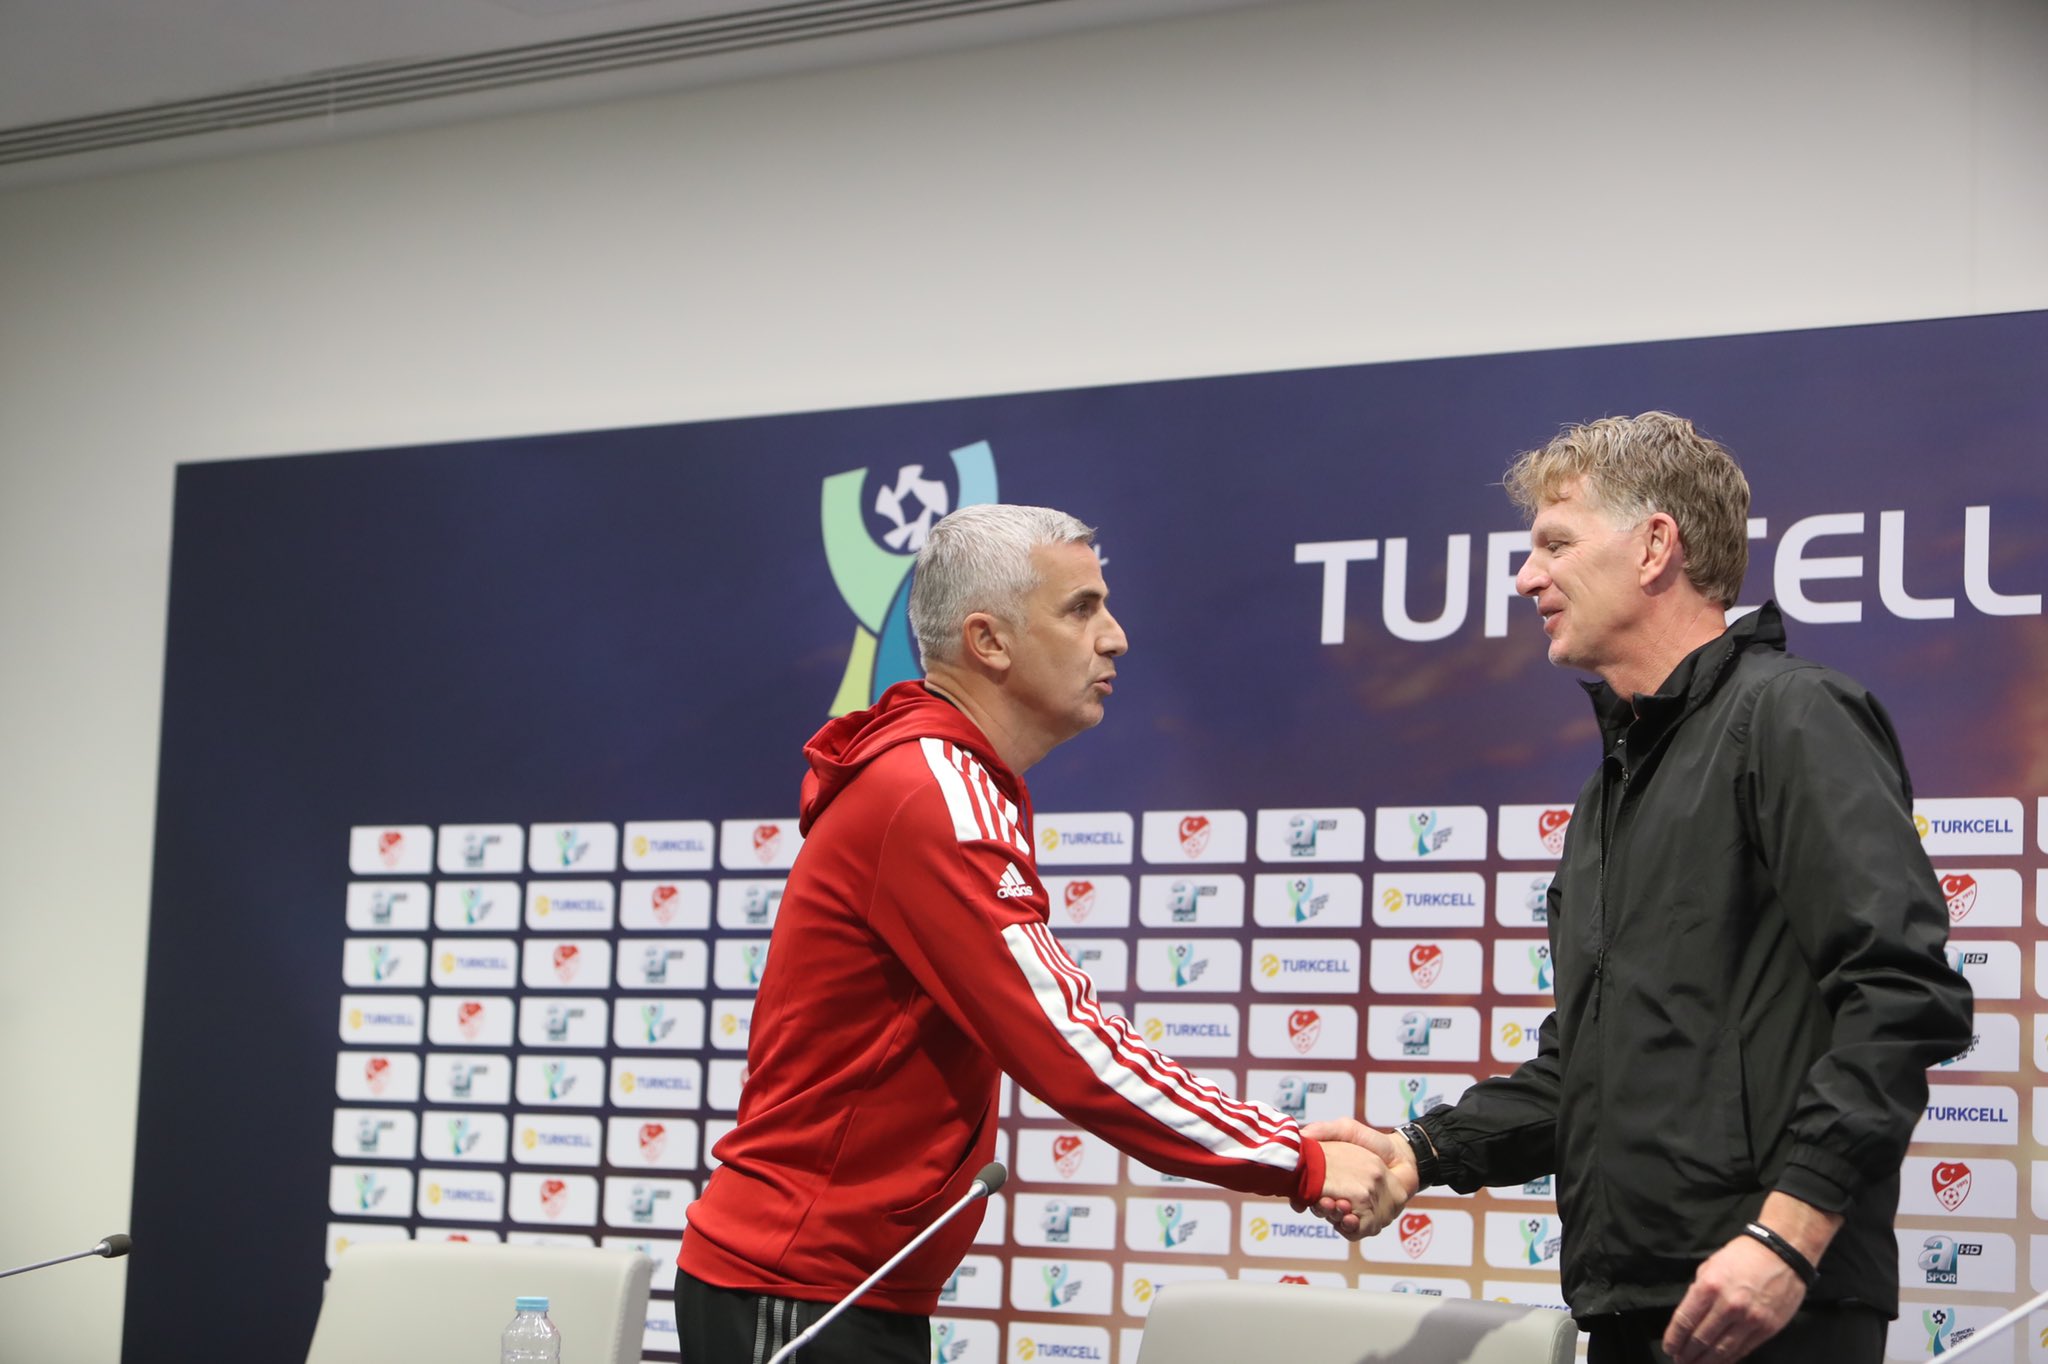 Önder karaveli, Süper Kupa Maçı Öncesi Düzenlenen Basın Toplantısında, Antalyaspor Teknik Sorumlusu ile Tokalaşırken